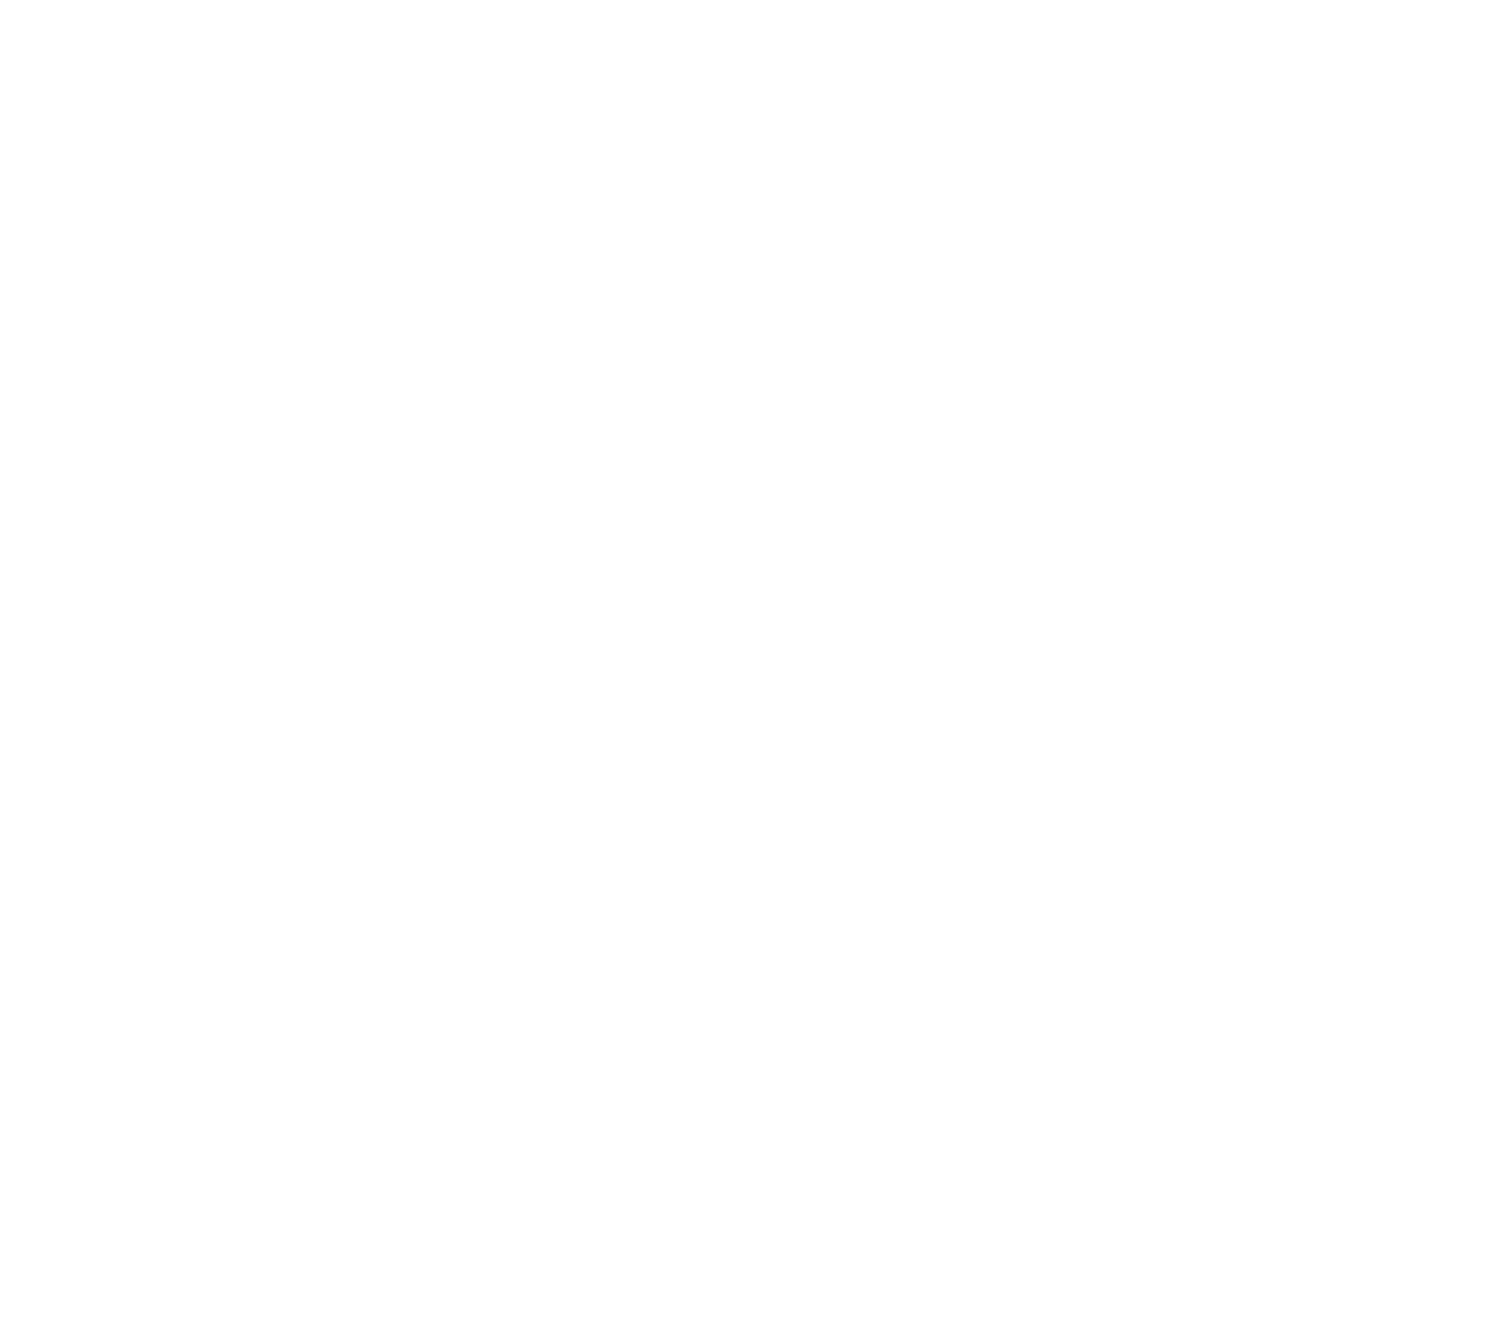 MooMoo Smokehouse